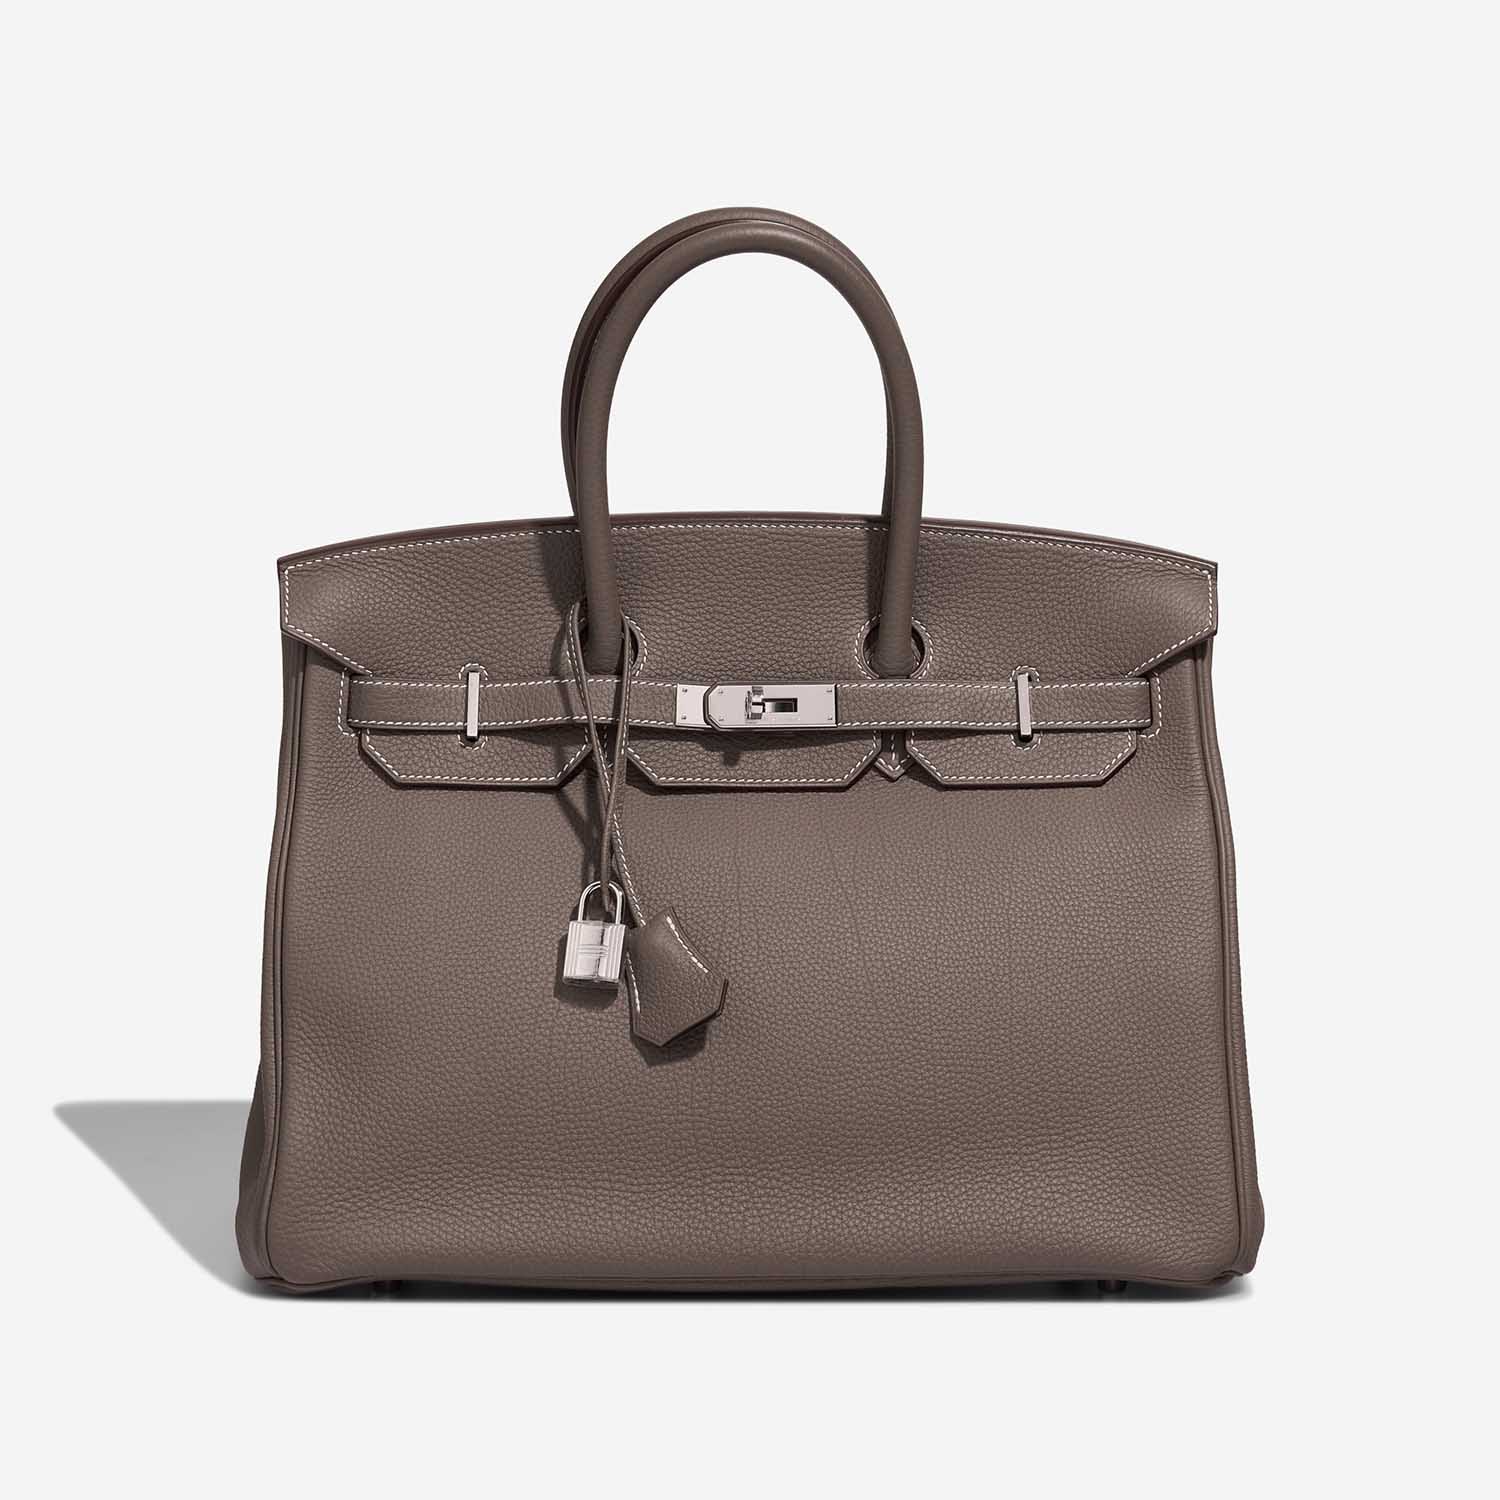 Hermès Birkin 35 Etoupe Front S | Verkaufen Sie Ihre Designertasche auf Saclab.com